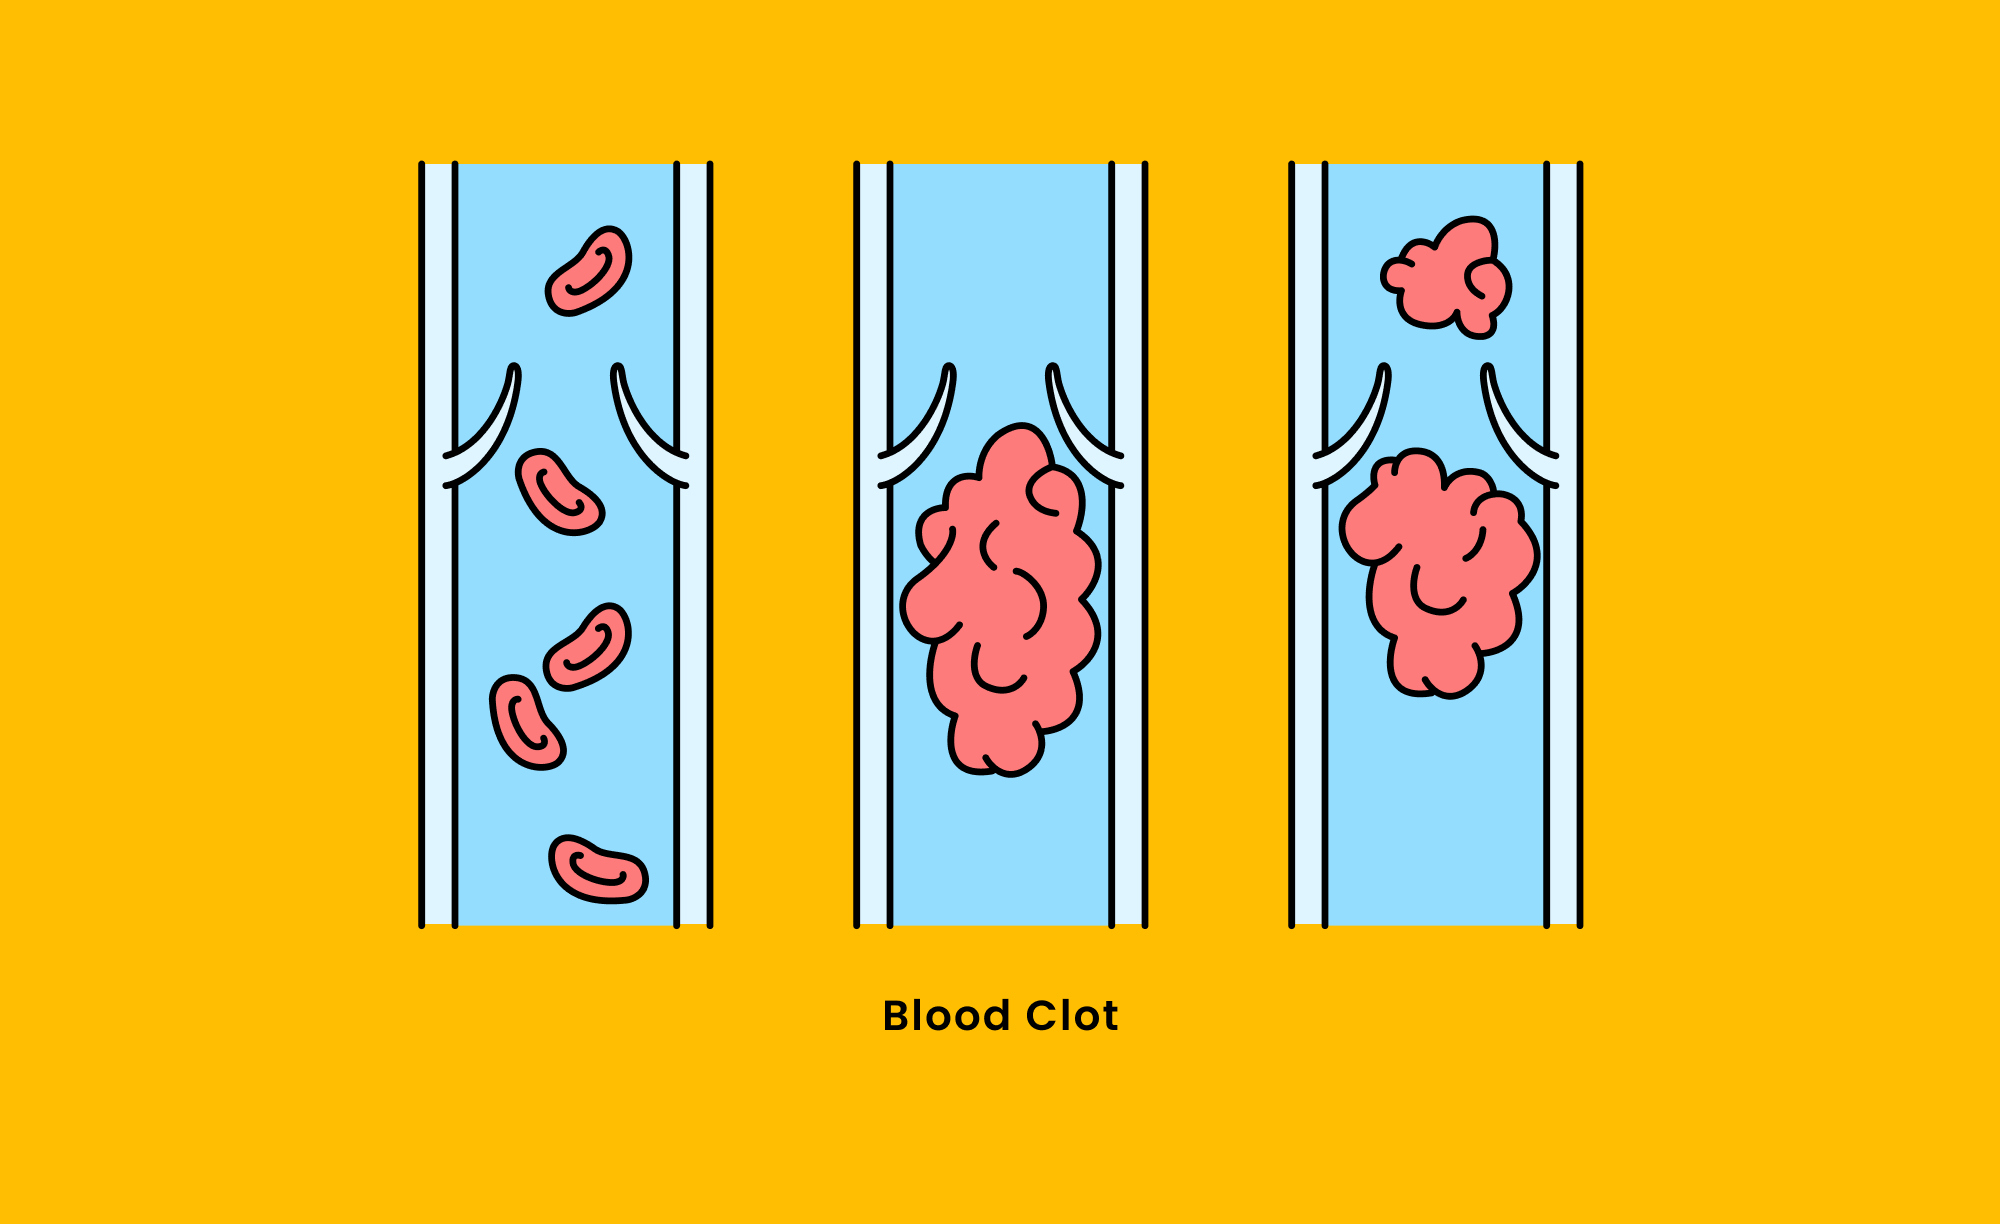 blood clot diagram